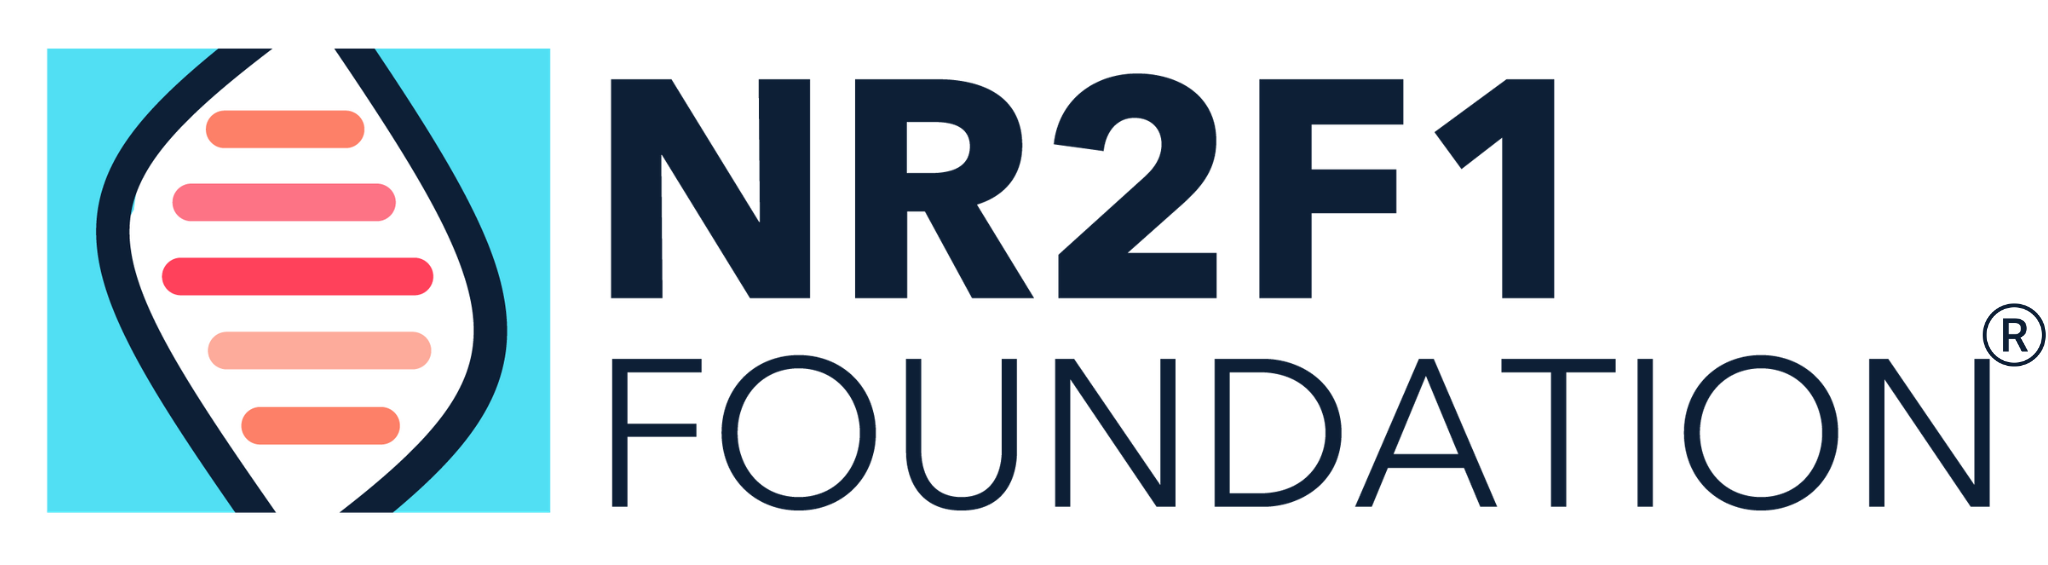 NR2F1 Foundation